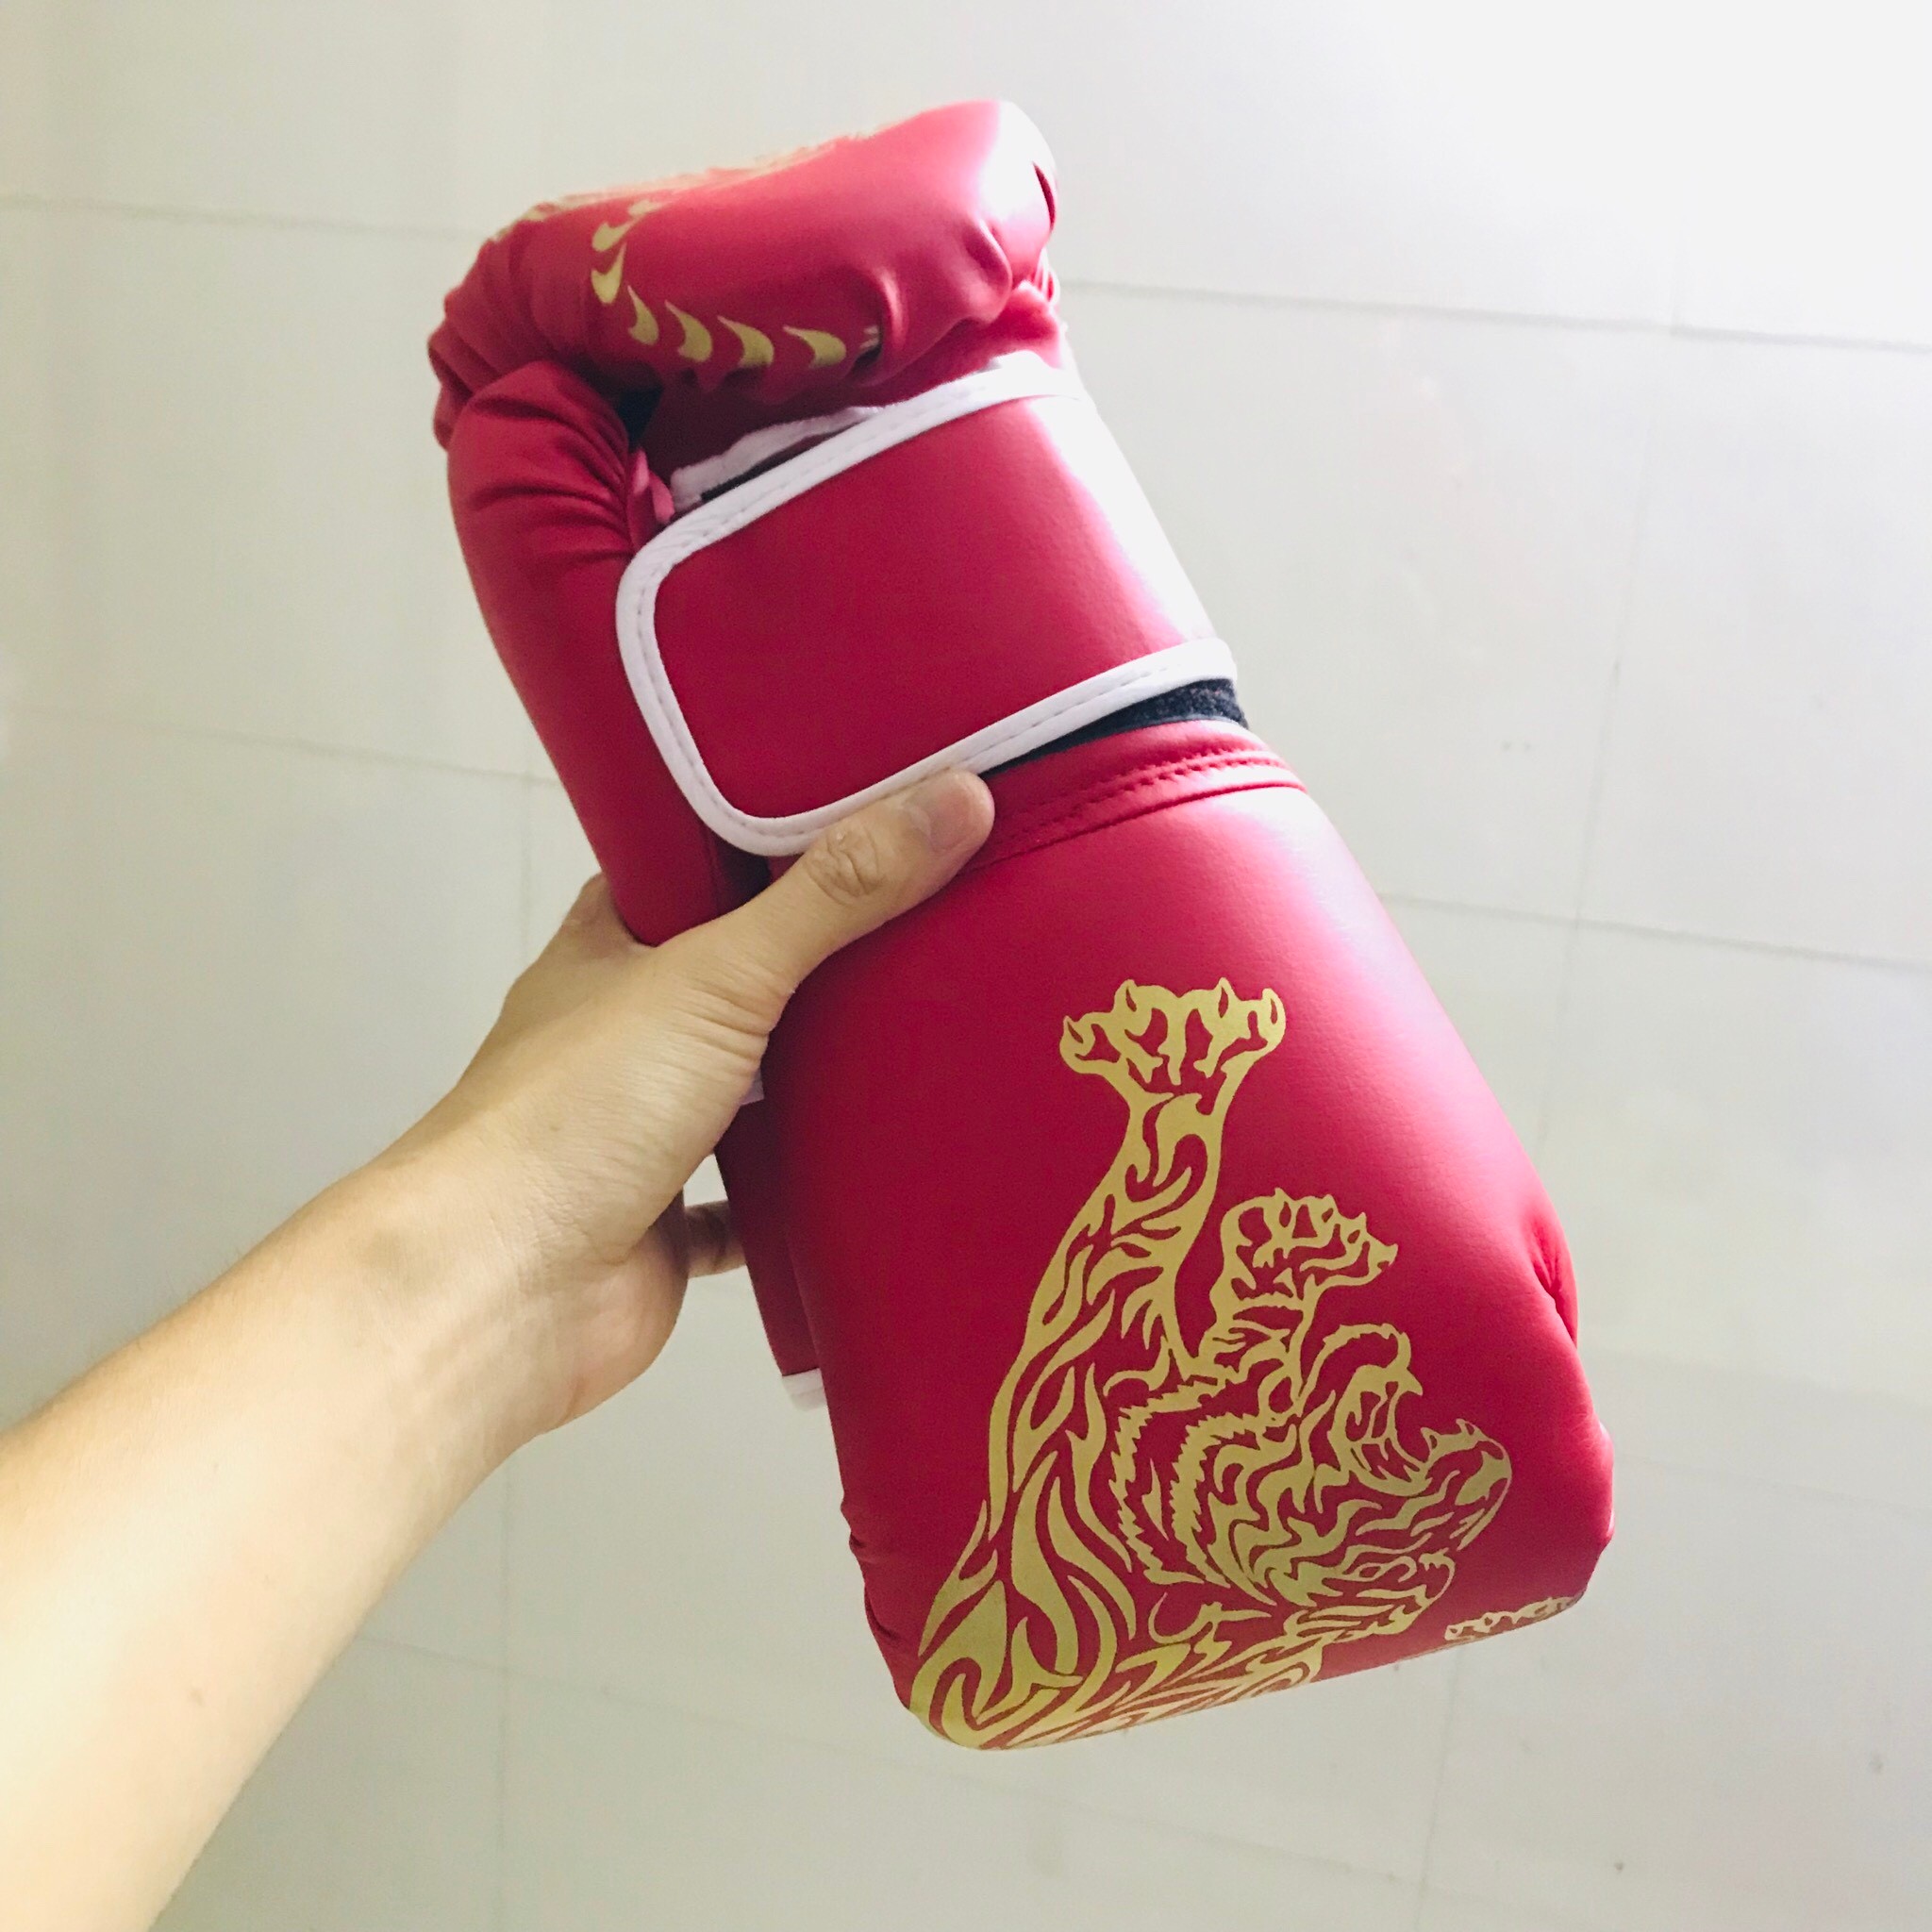 Găng Tay Boxing Người Lớn AmandaC Life – Găng Tay Đấm Bốc Người Lớn Chính Hãng